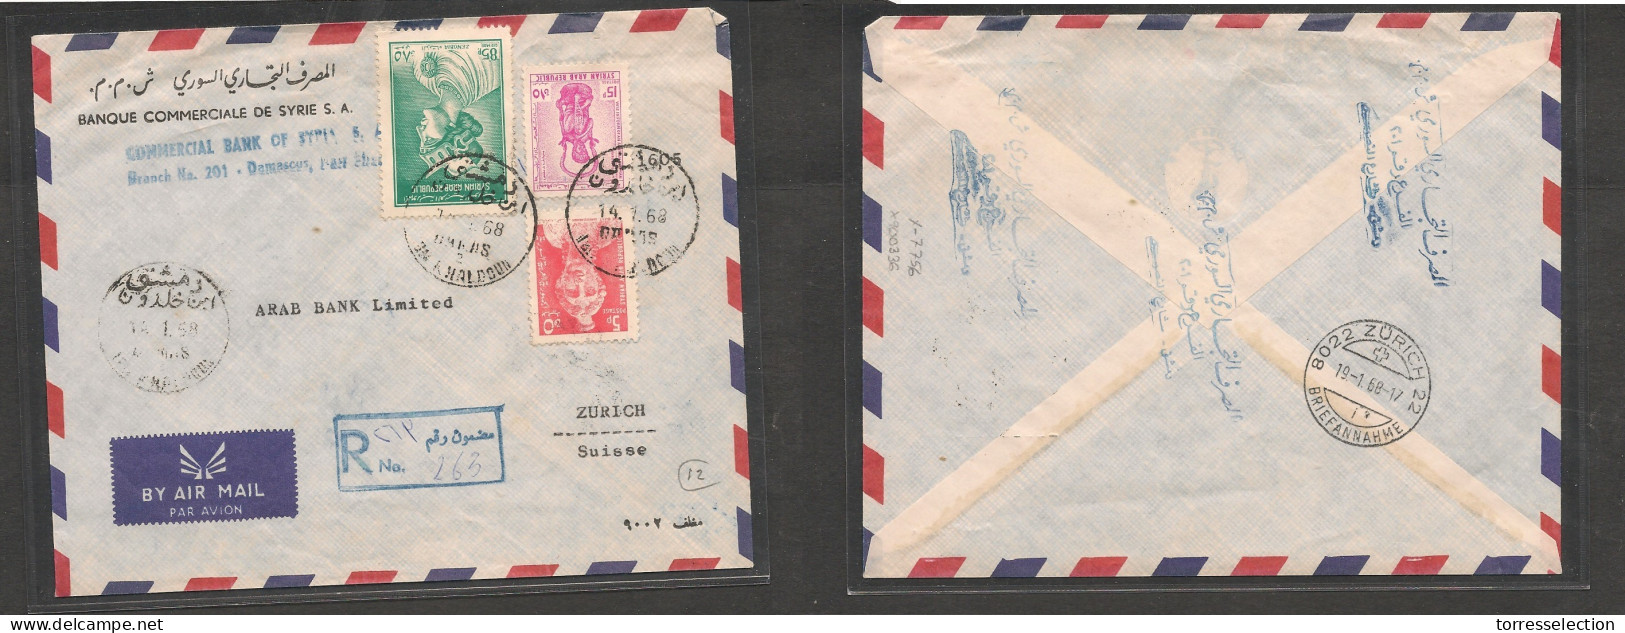 SYRIA. Syria Cover - 1968 Damascus To Switz Zurich Registr Air Mult Fkd Env Nah Khaldoun, Vf XSALE. - Syria